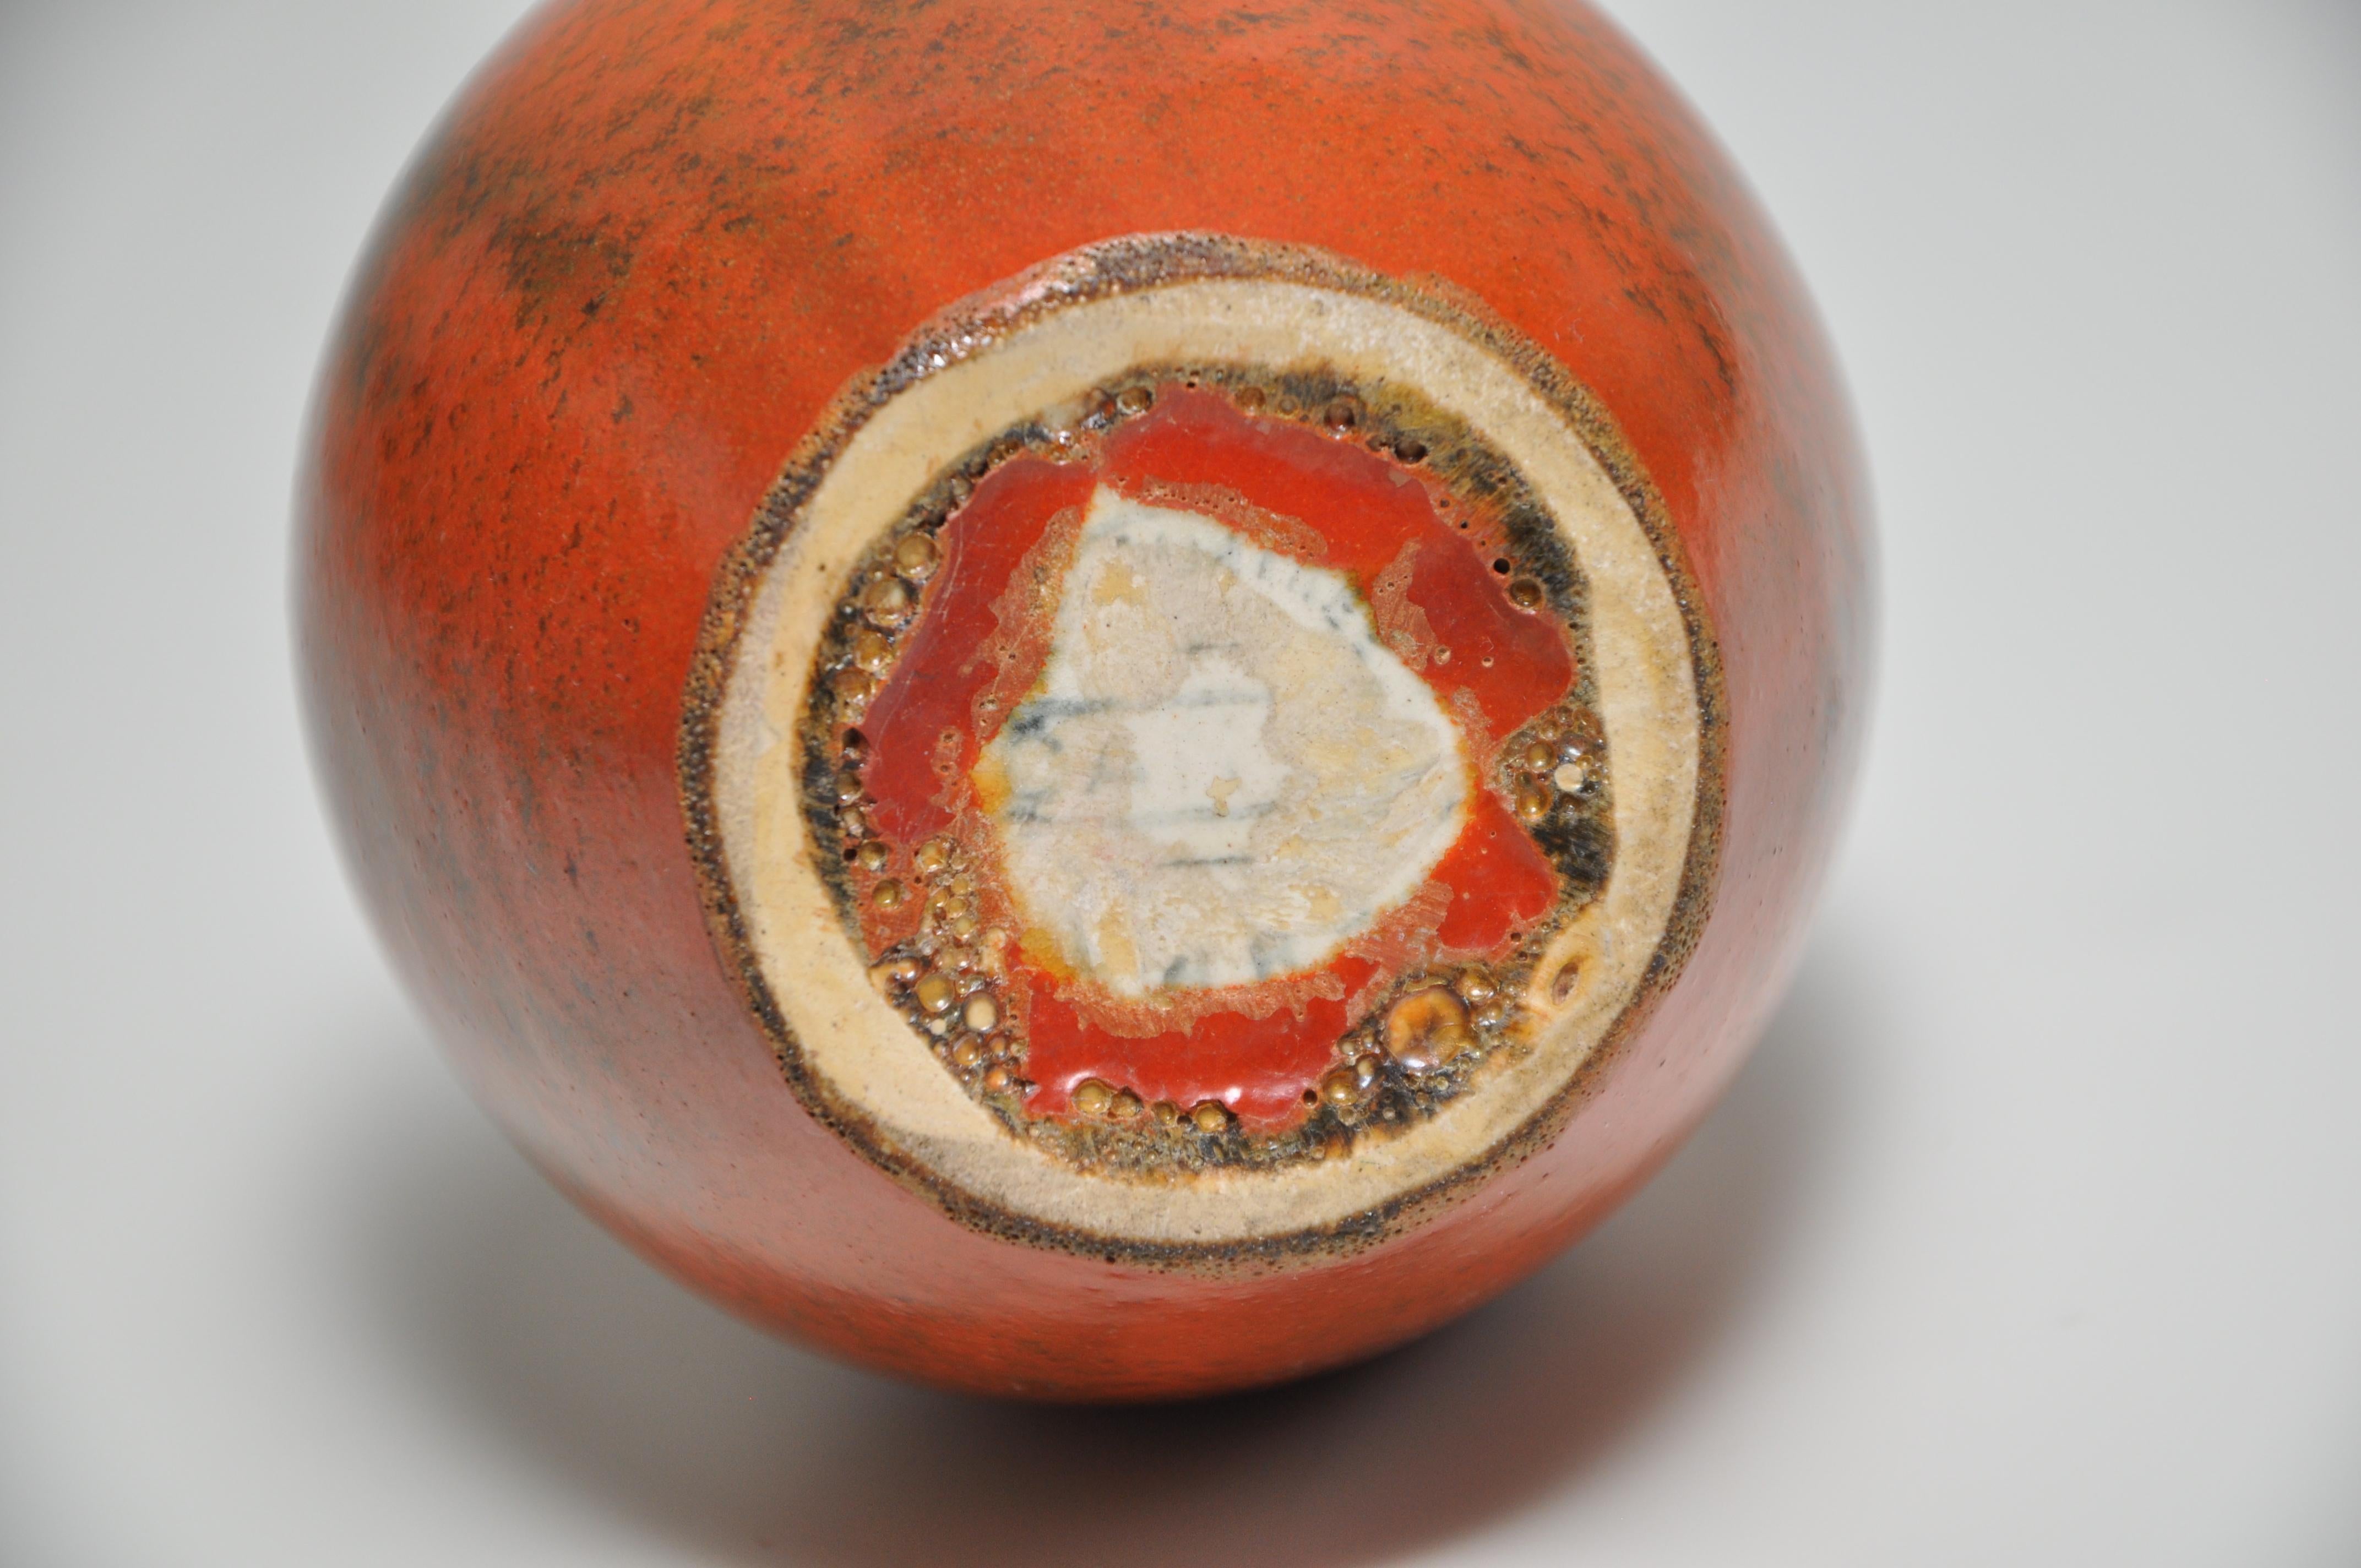 Poterie d'art anglaise vase orange céramique de style chinois     

Un très joli petit vase en poterie d'art anglaise d'inspiration chinoise, recouvert d'une glaçure colorée d'un effet riche et vibrant en orange avec des mouchetures de brun et de